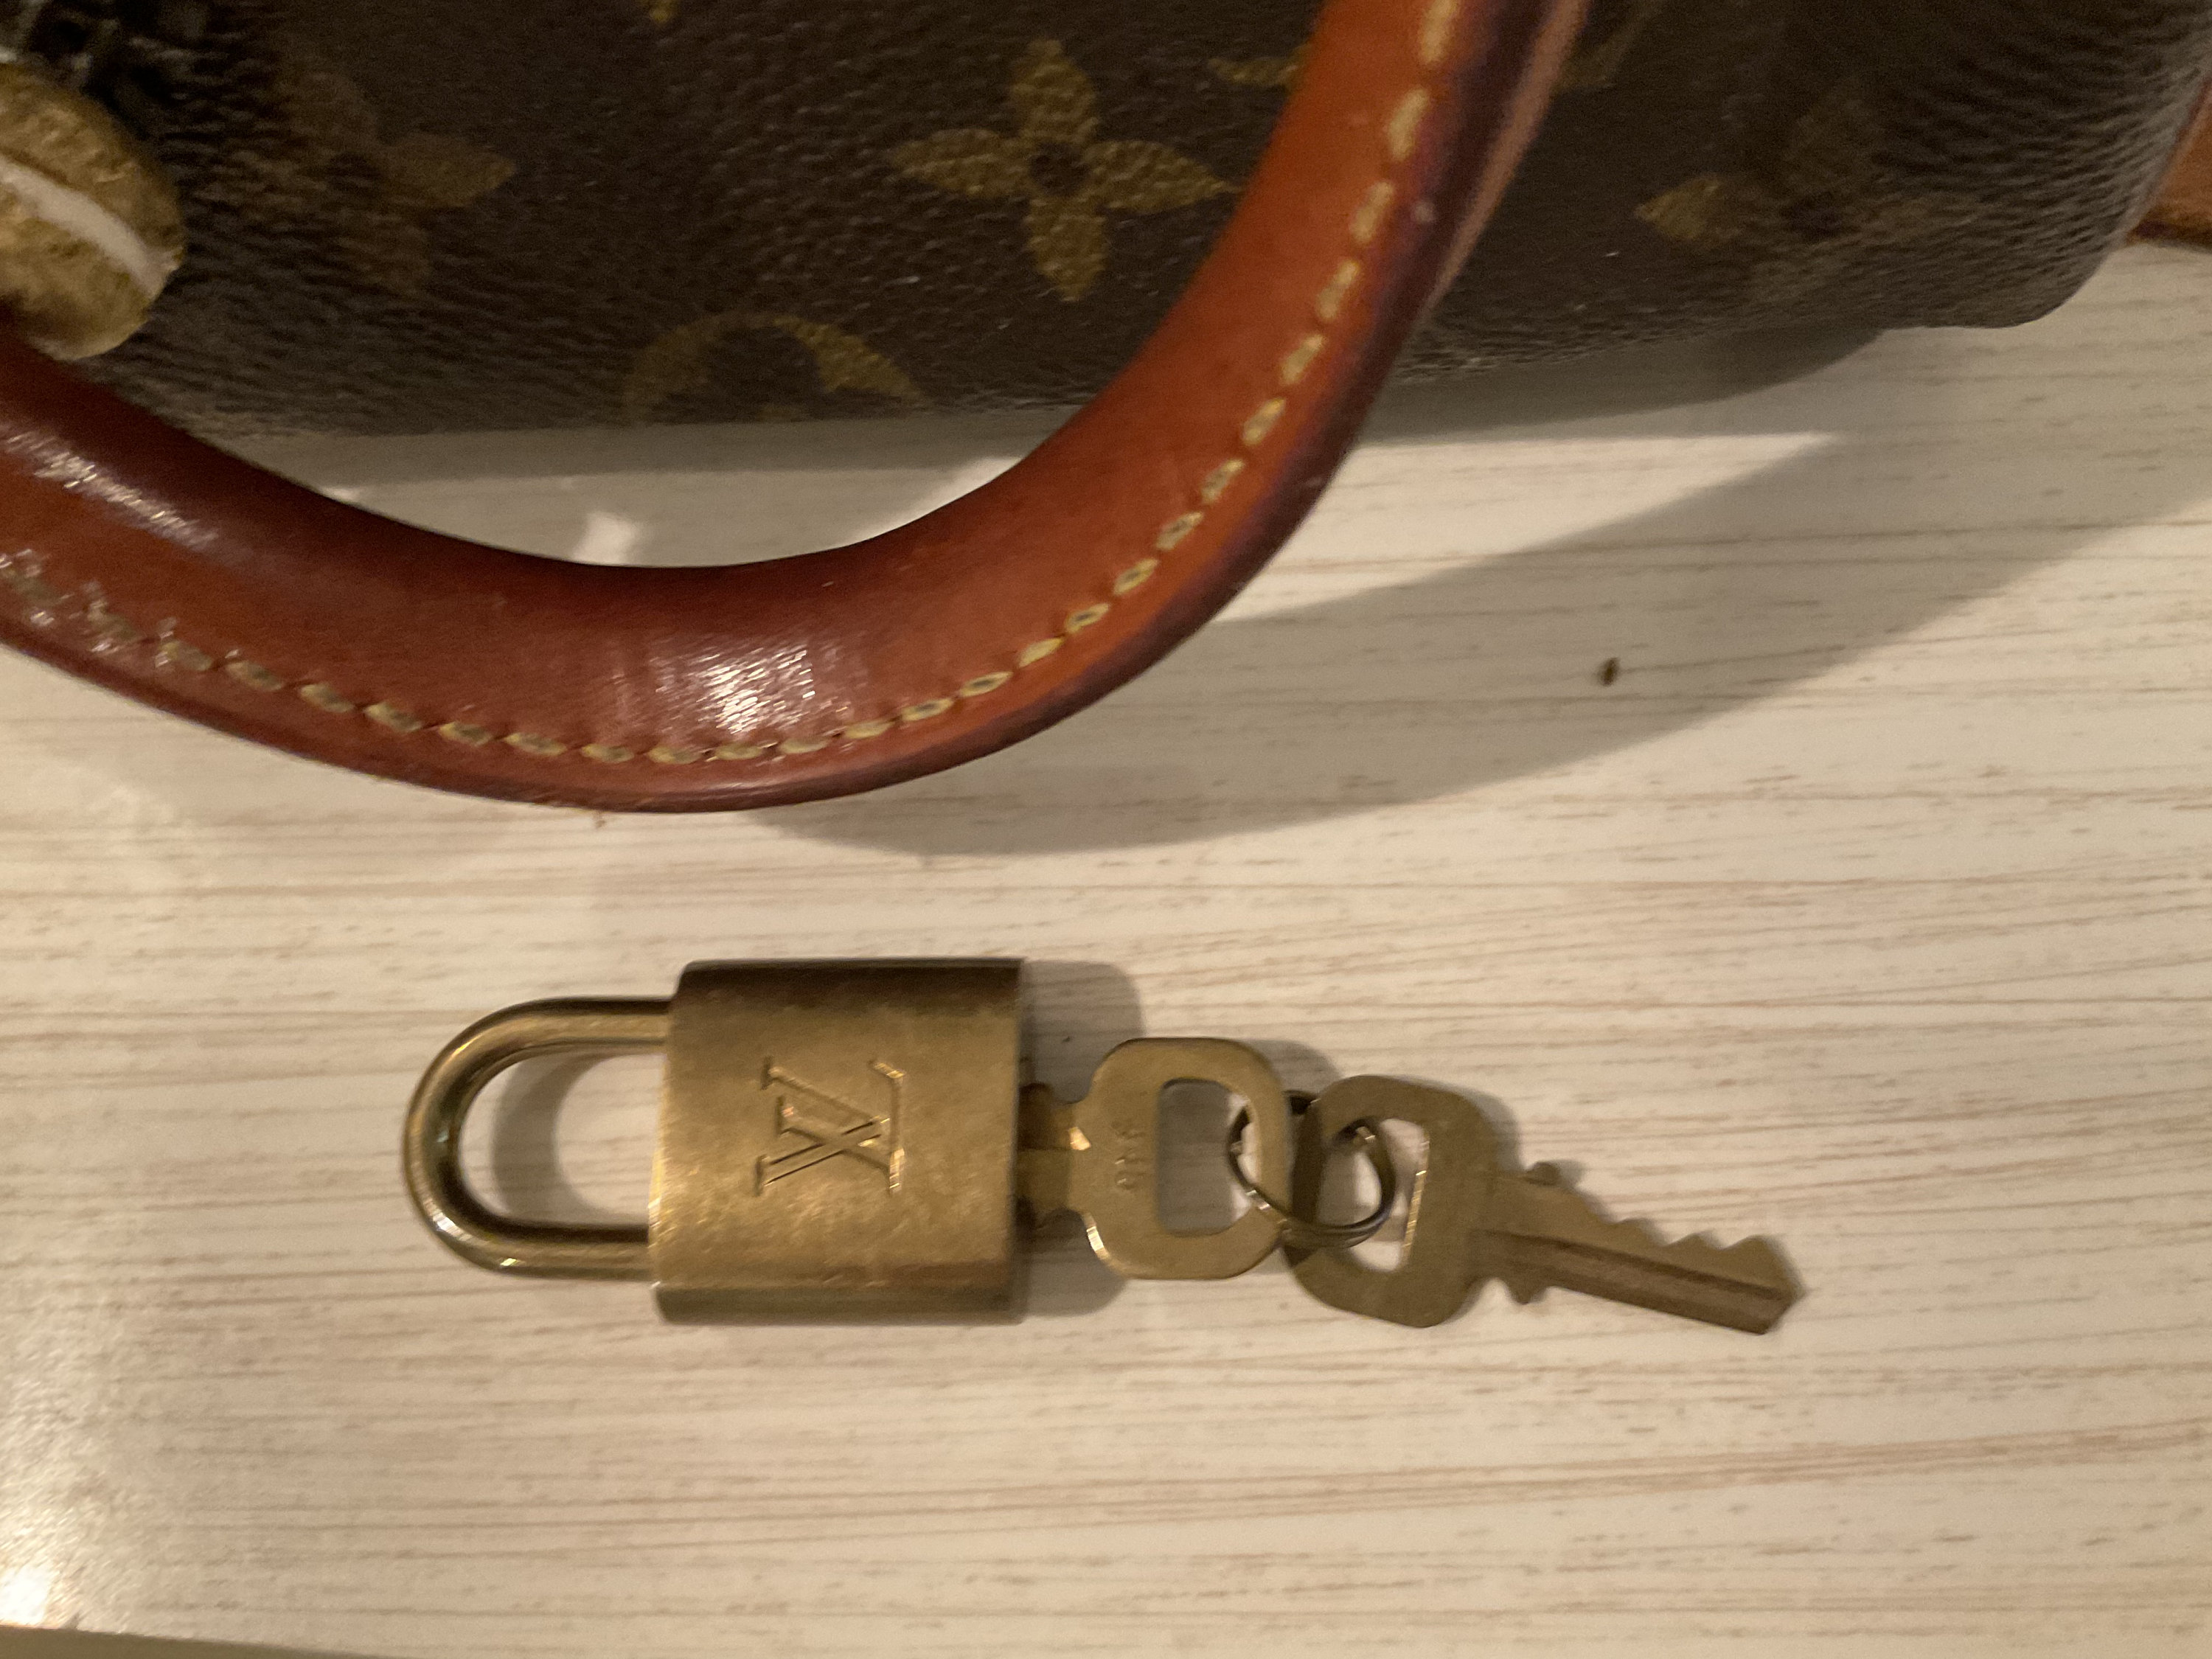 Vintage Louis Vuitton Speedy Mini Handbag Lock & Key 